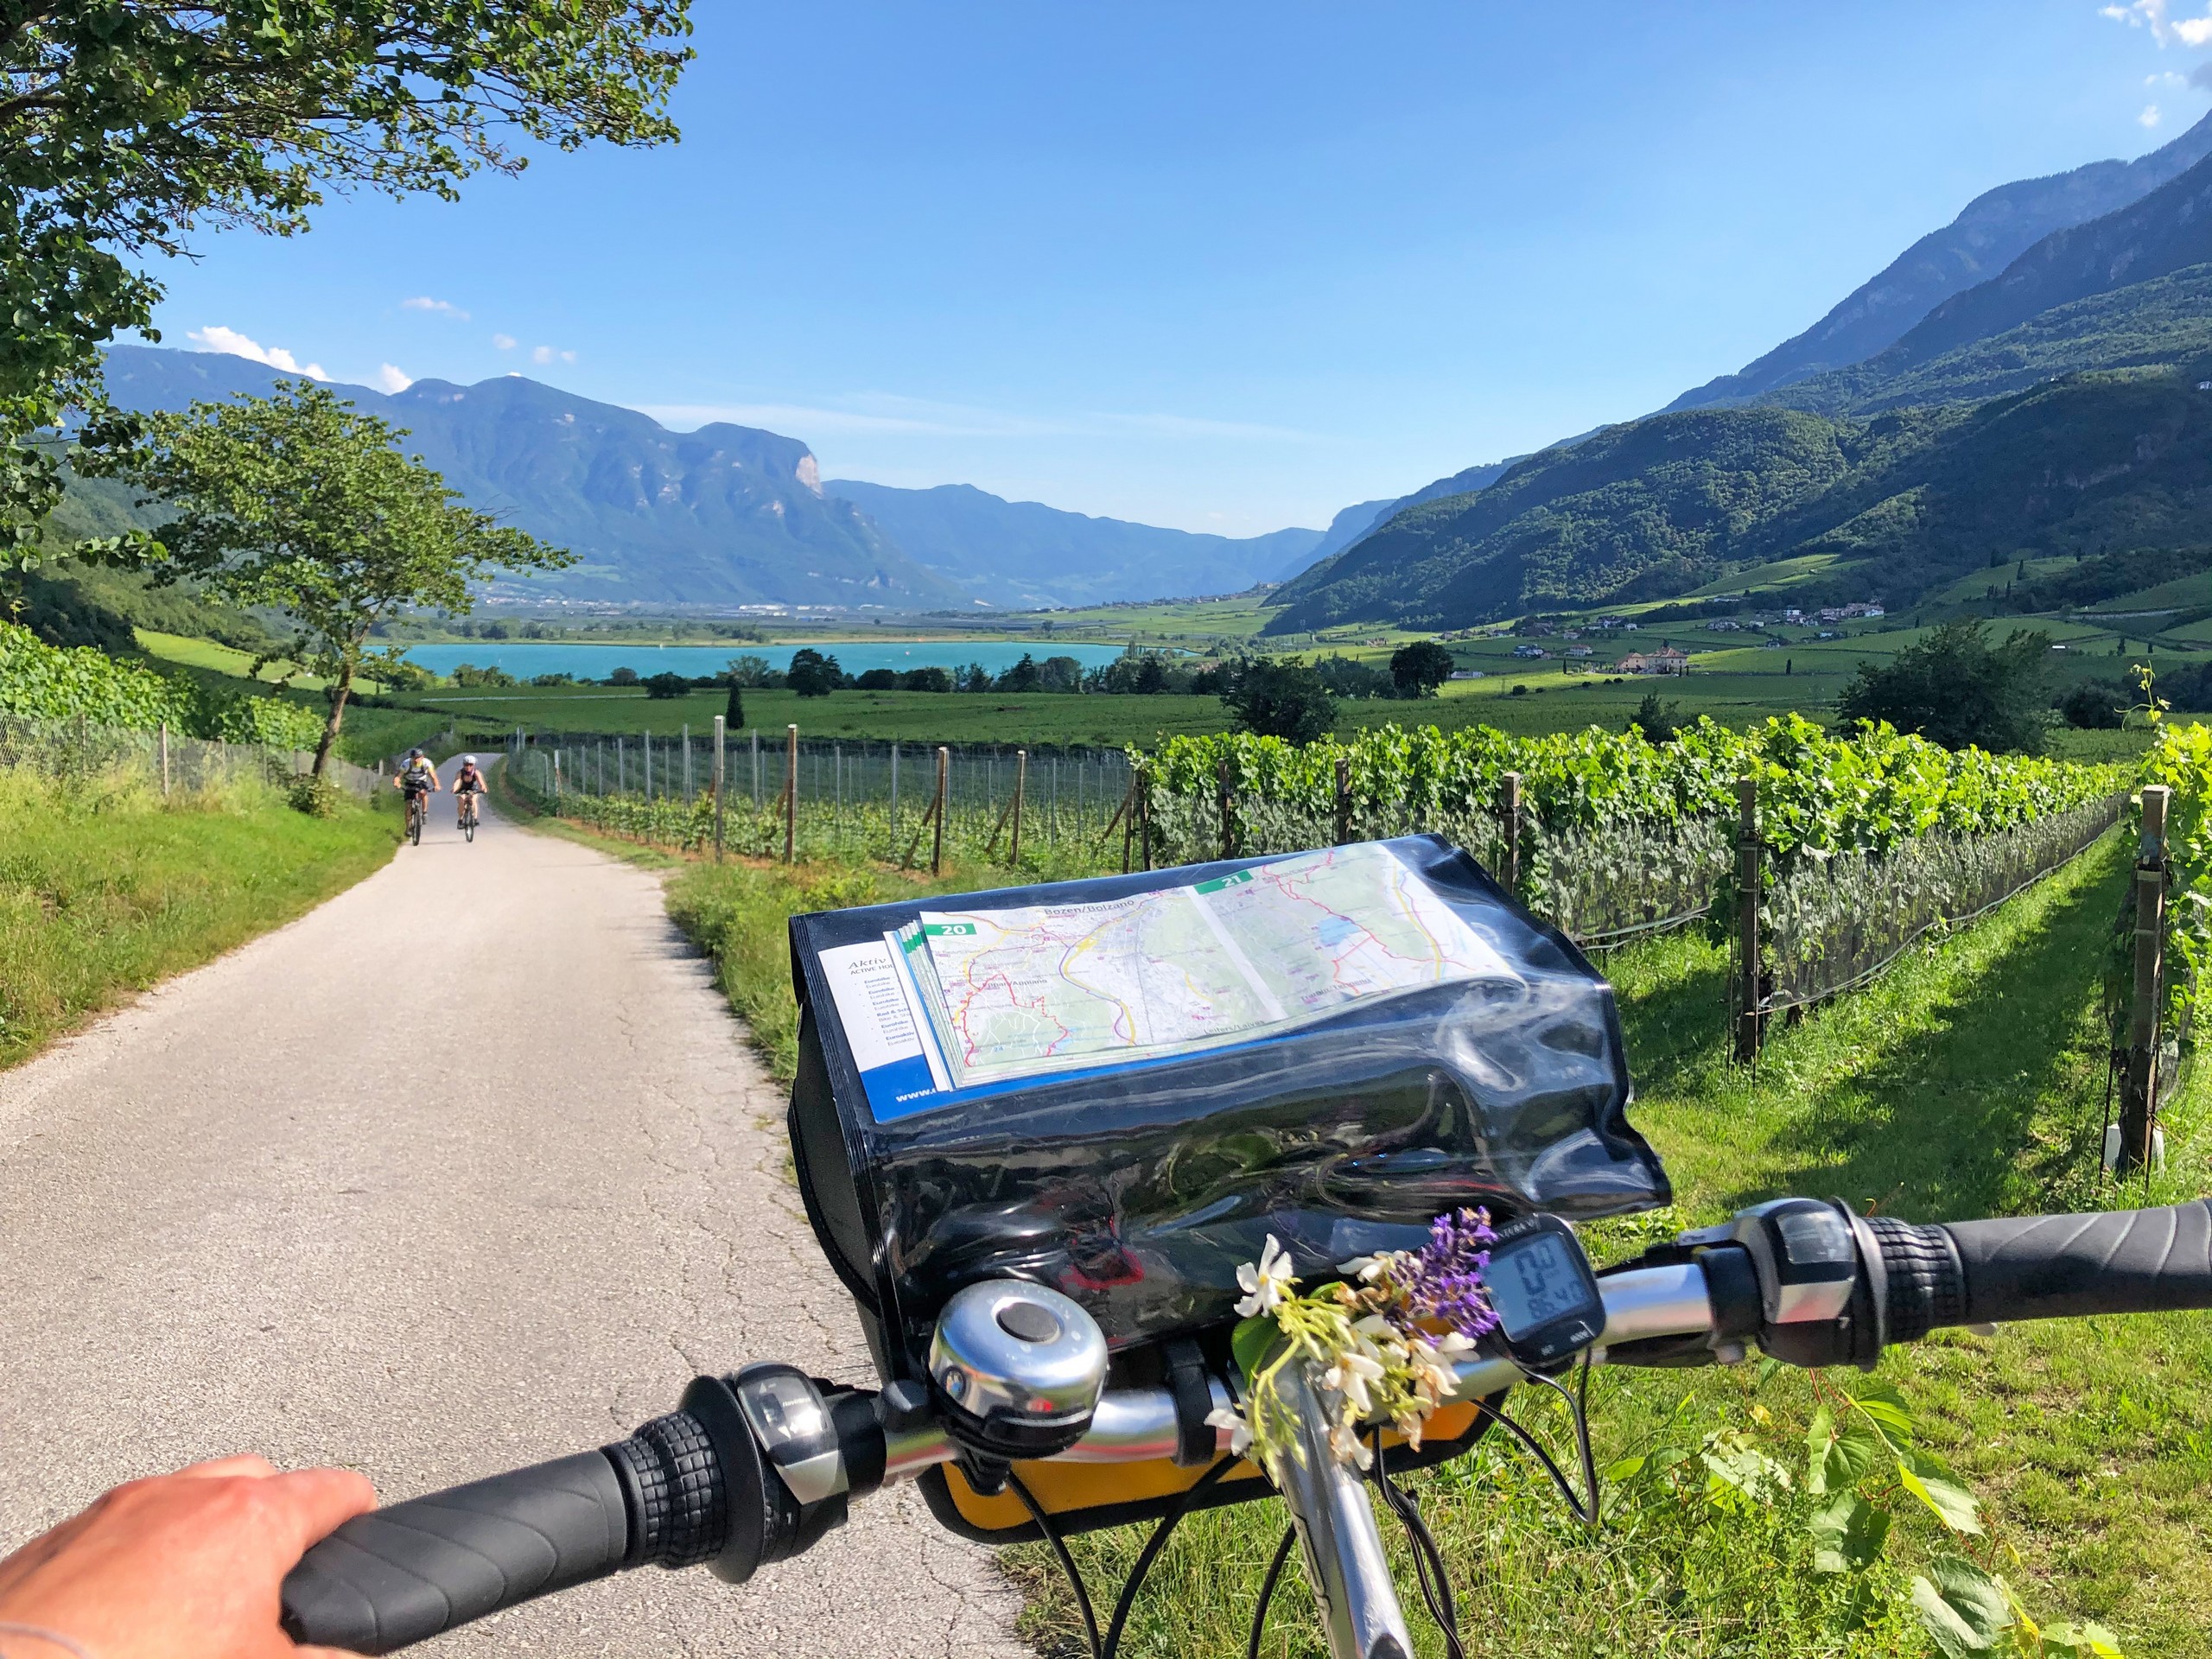 Self-guided biking tour from Munich to Garda 02